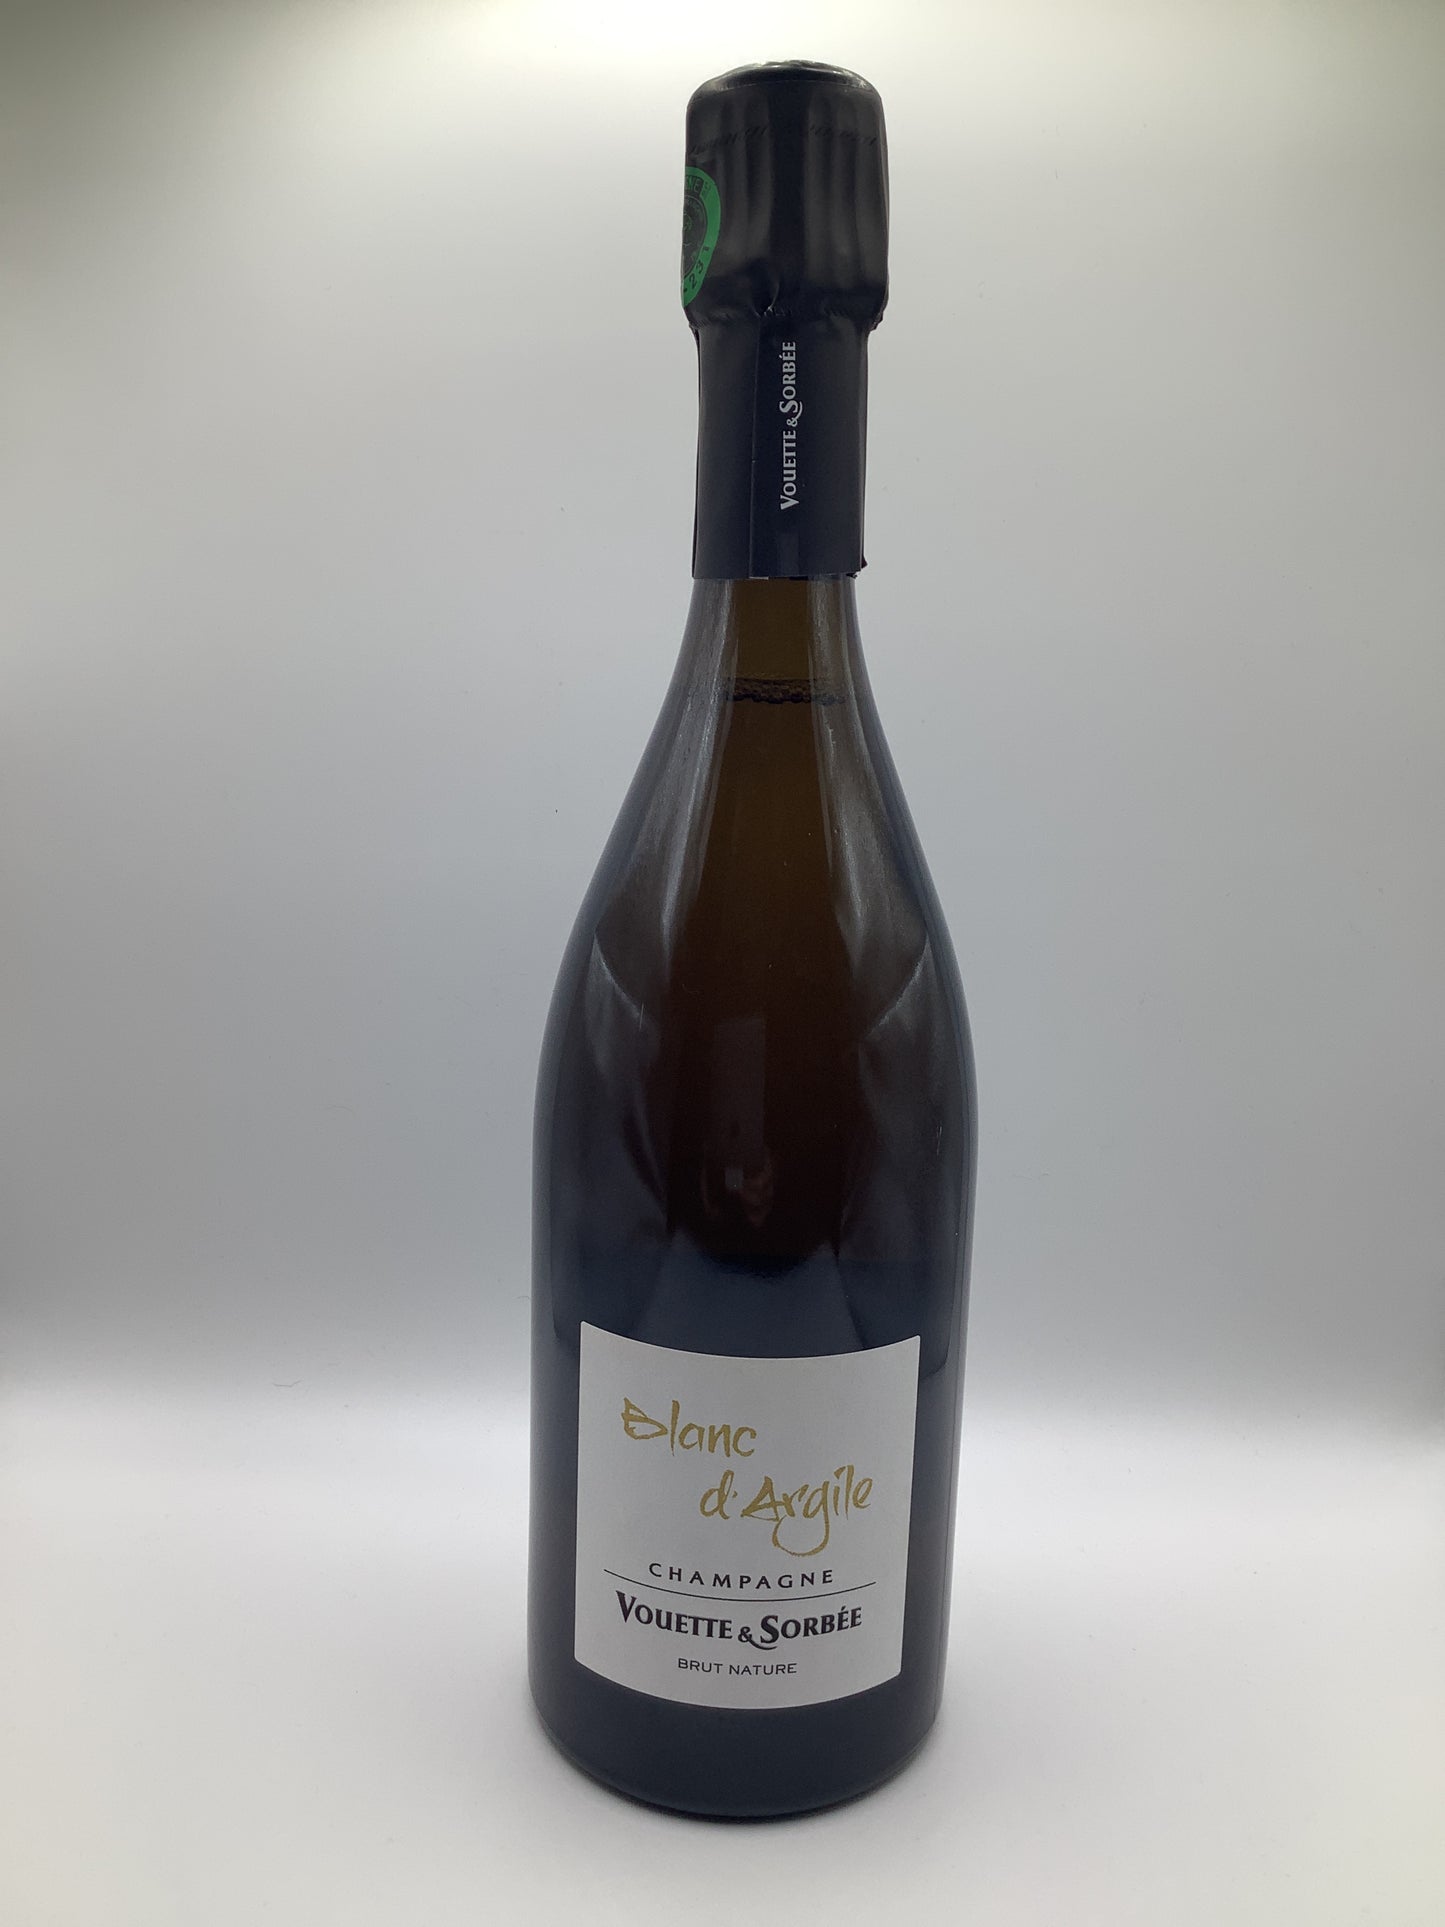 Vouette & Sorbee, Blanc d'Argile (Champagne)